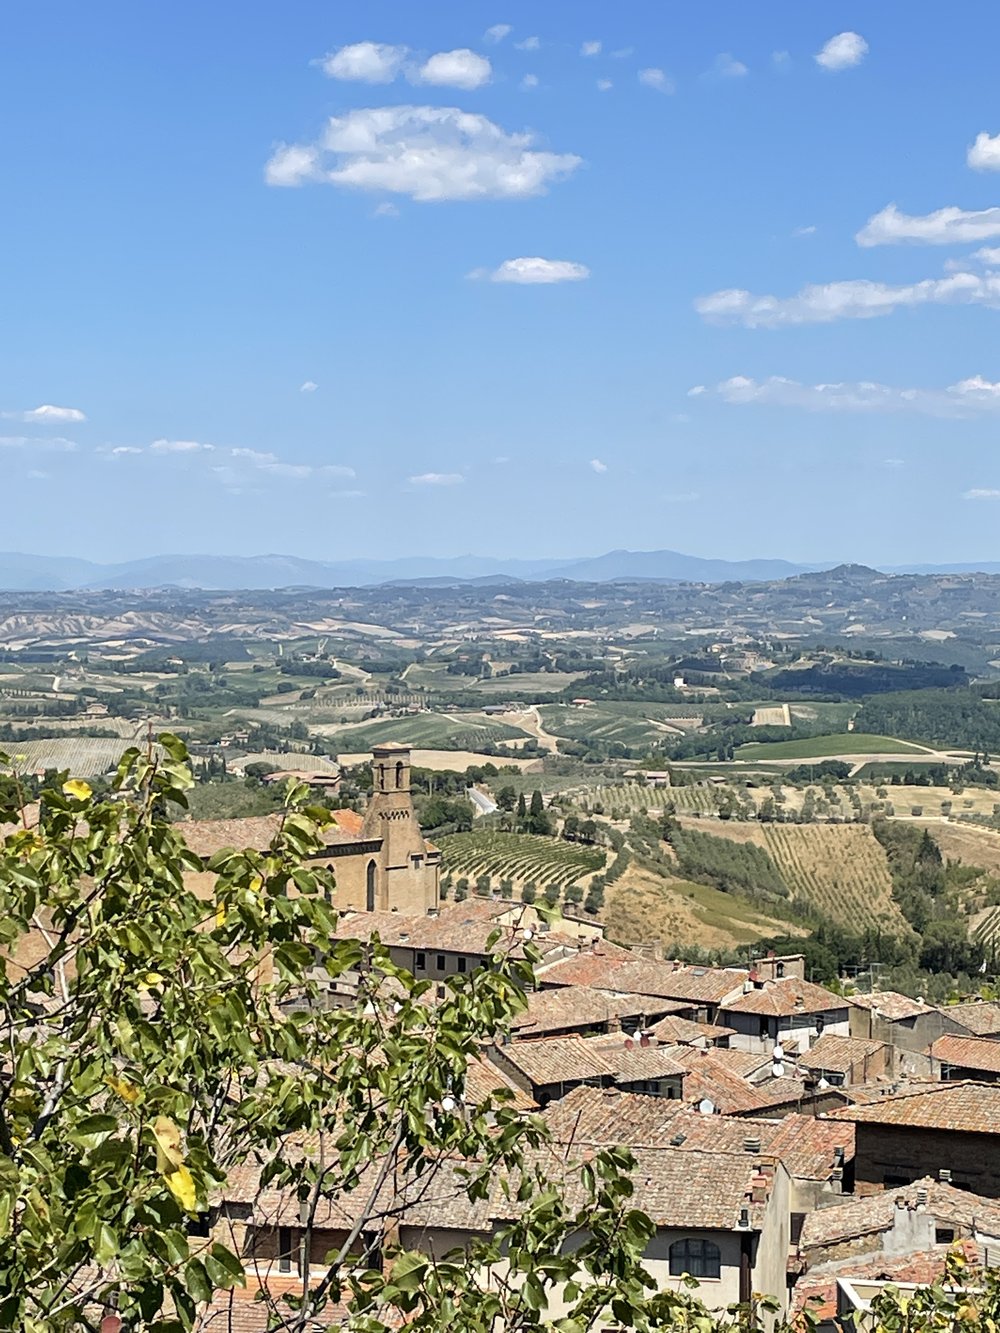 View from Parco della Rocca